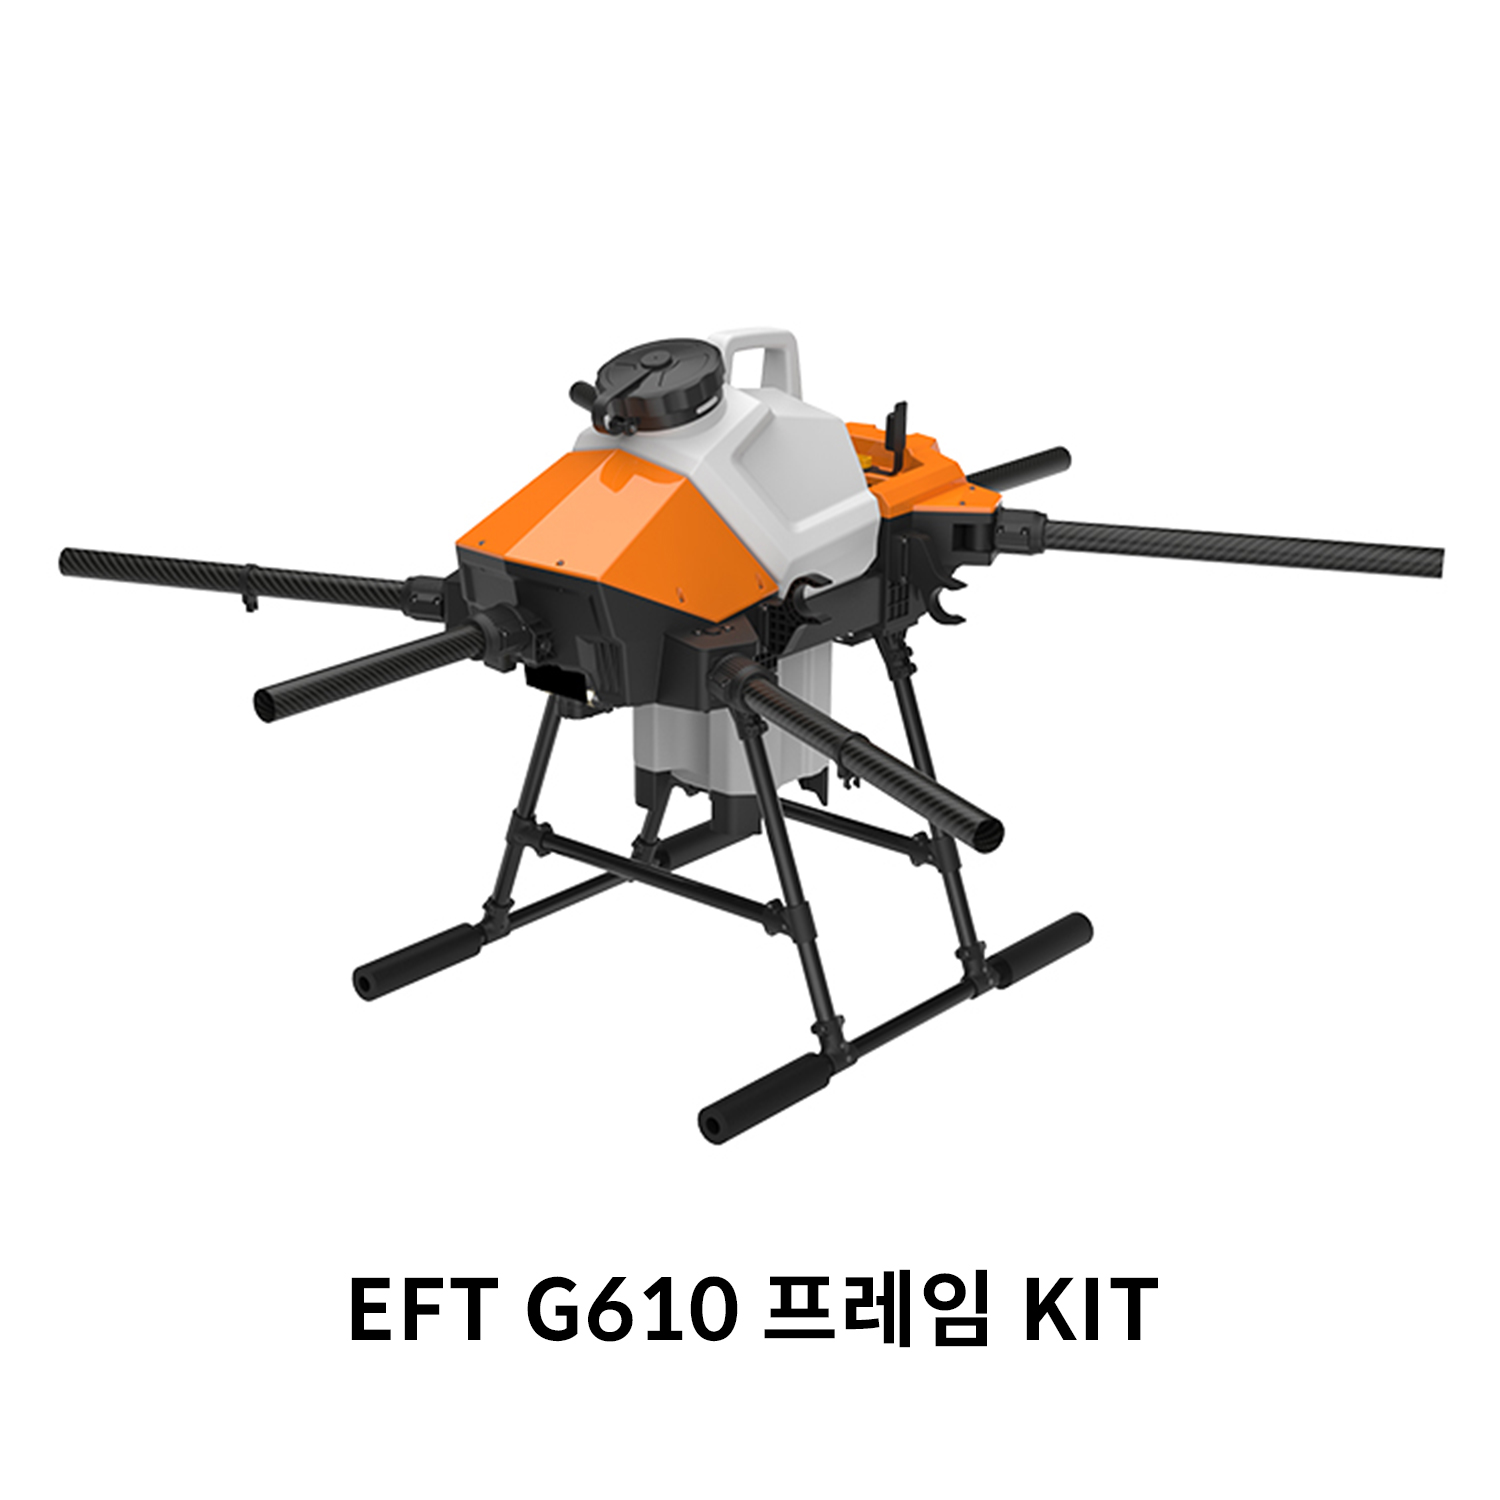 EFT G610 프레임 KIT 농업 방제 드론ㅤ 헬셀